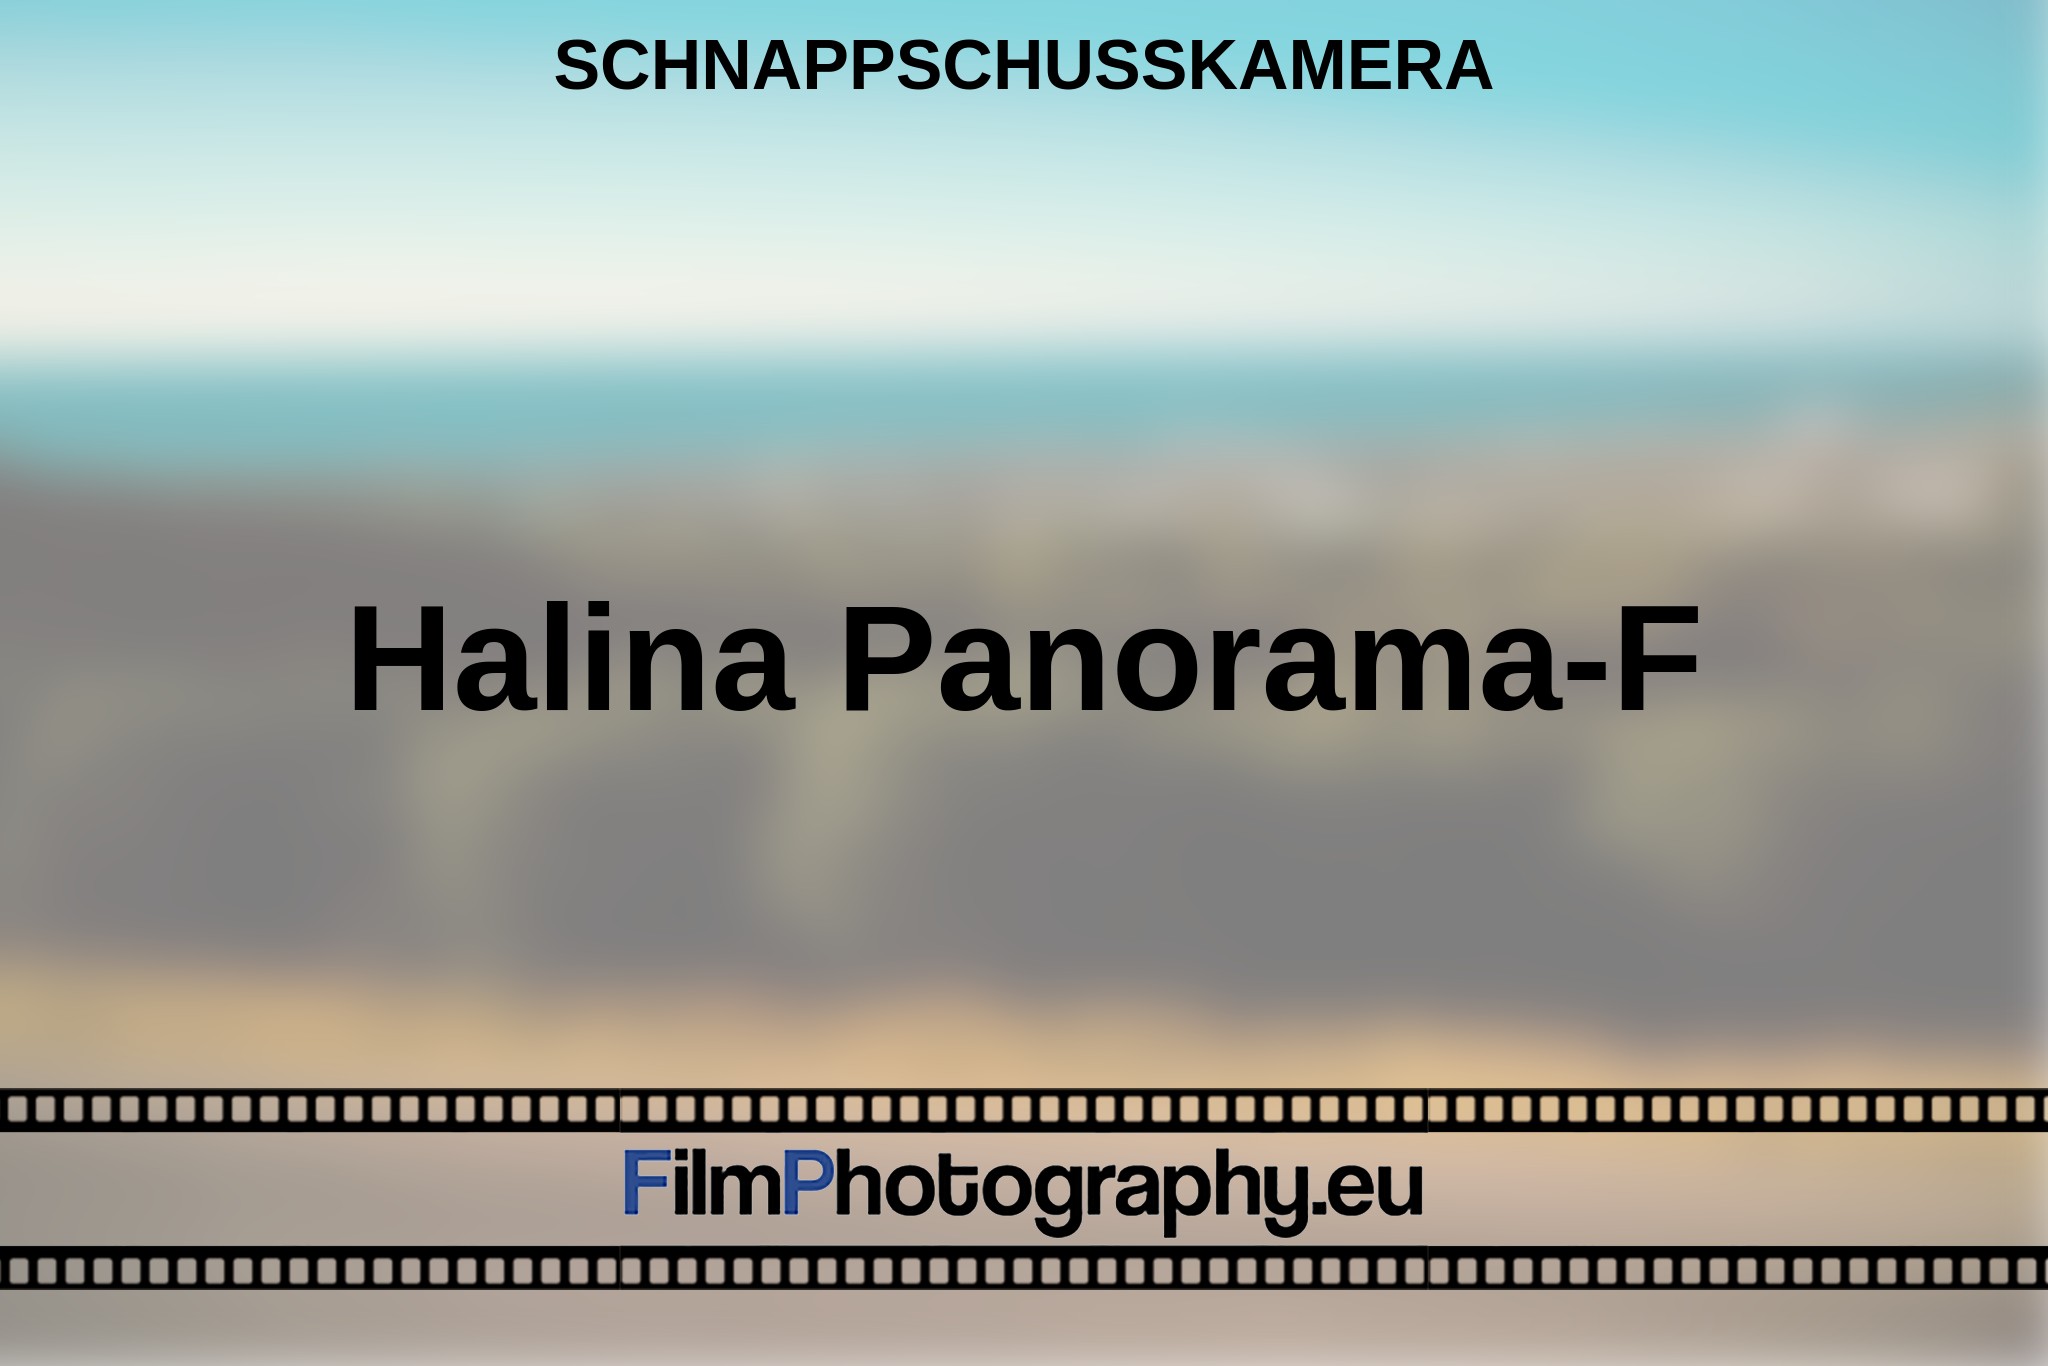 halina-panorama-f-schnappschusskamera-bnv.jpg